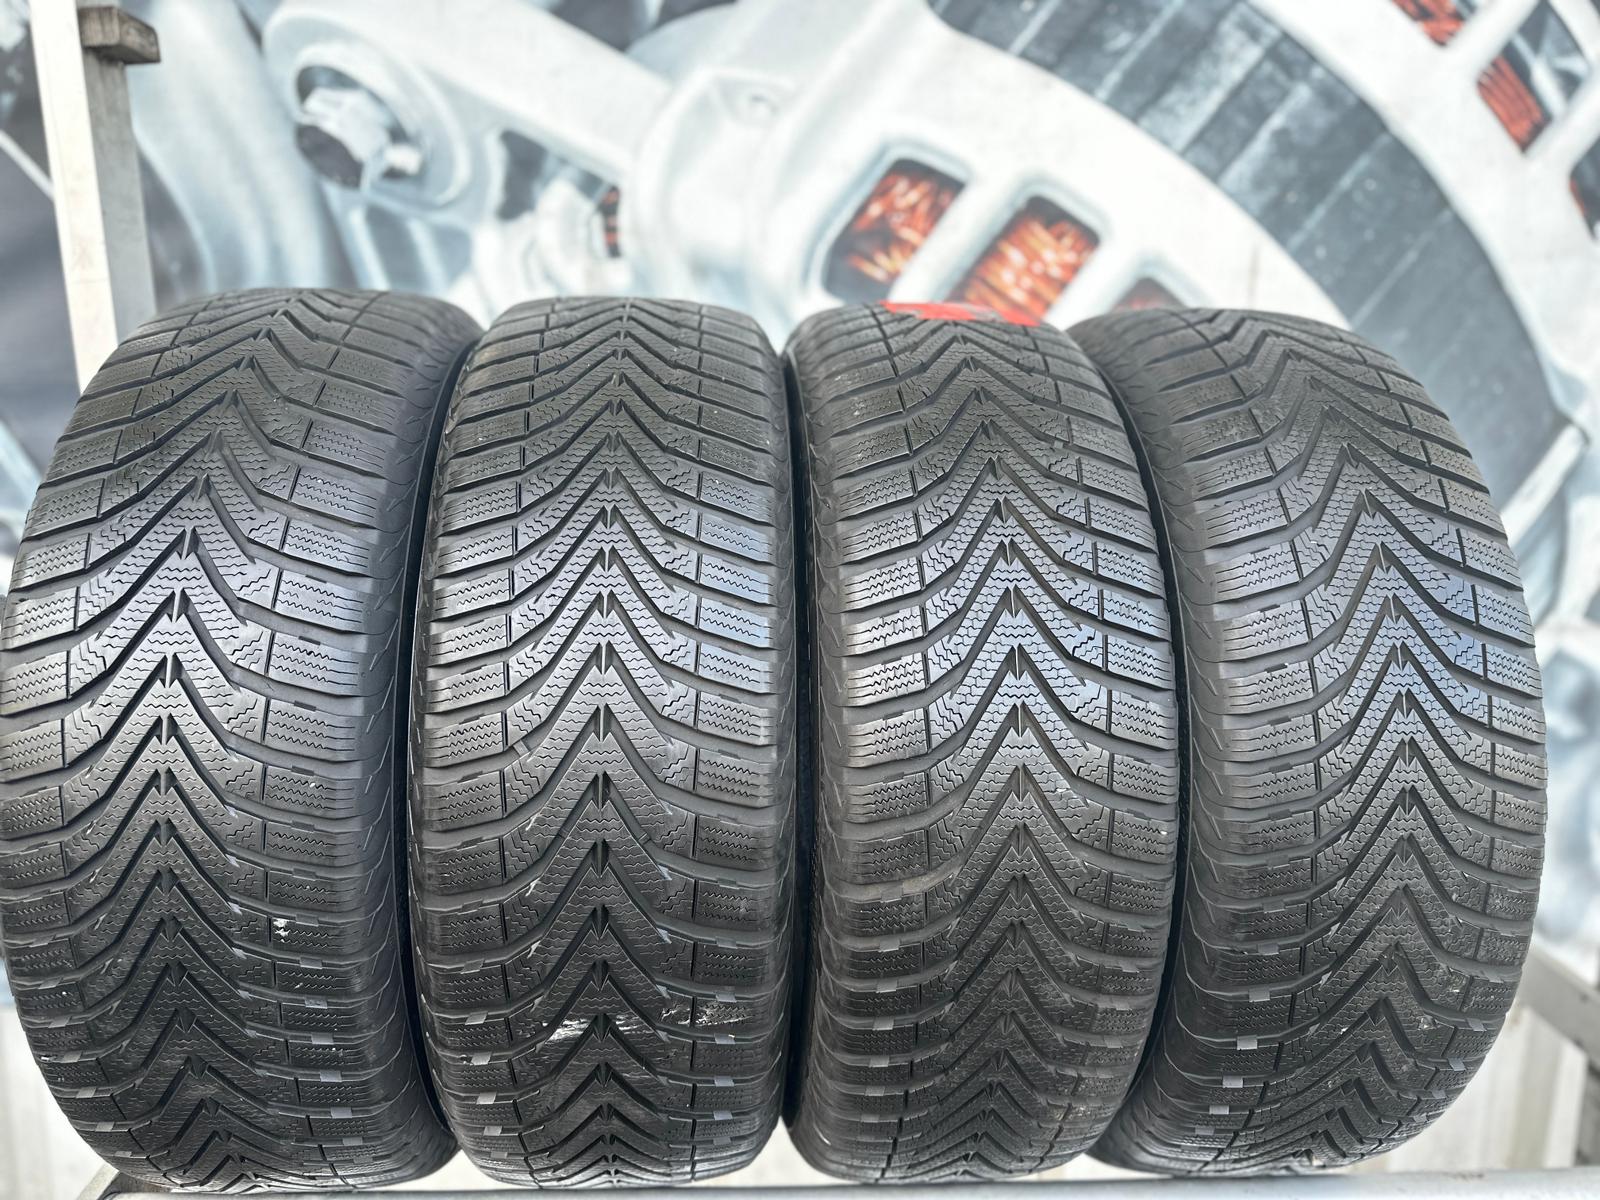 - specialist tires Speed Speed-Reifen – parts car your